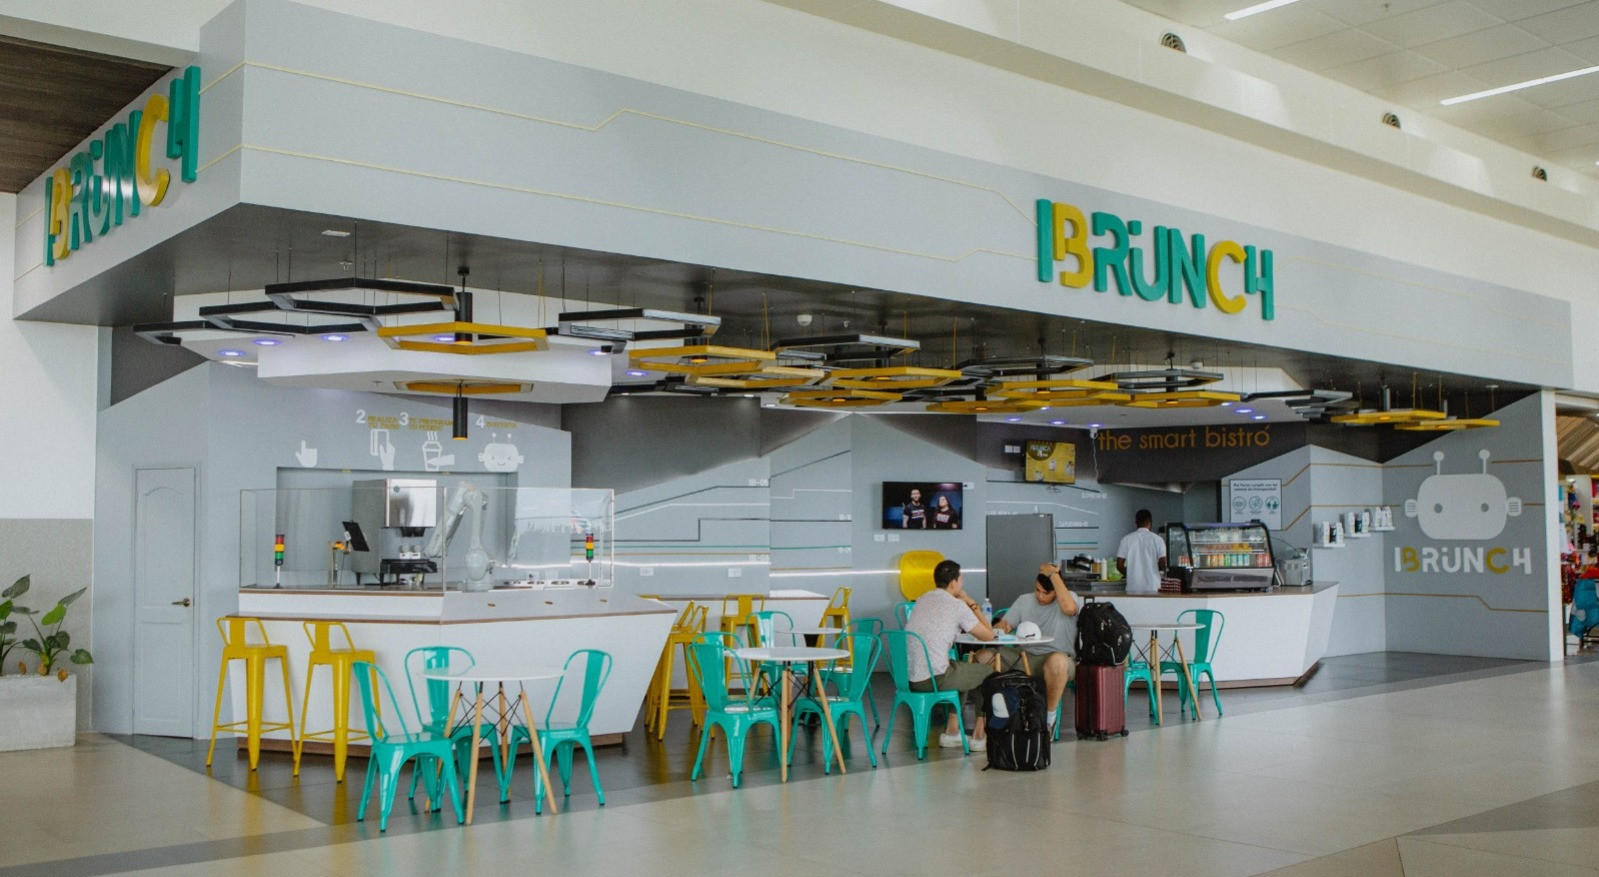 Servicios-Aeropuerto-Comayagua-Honduras-Palmerola-La nueva revolución del café tiene su lugar en I BRUNCH